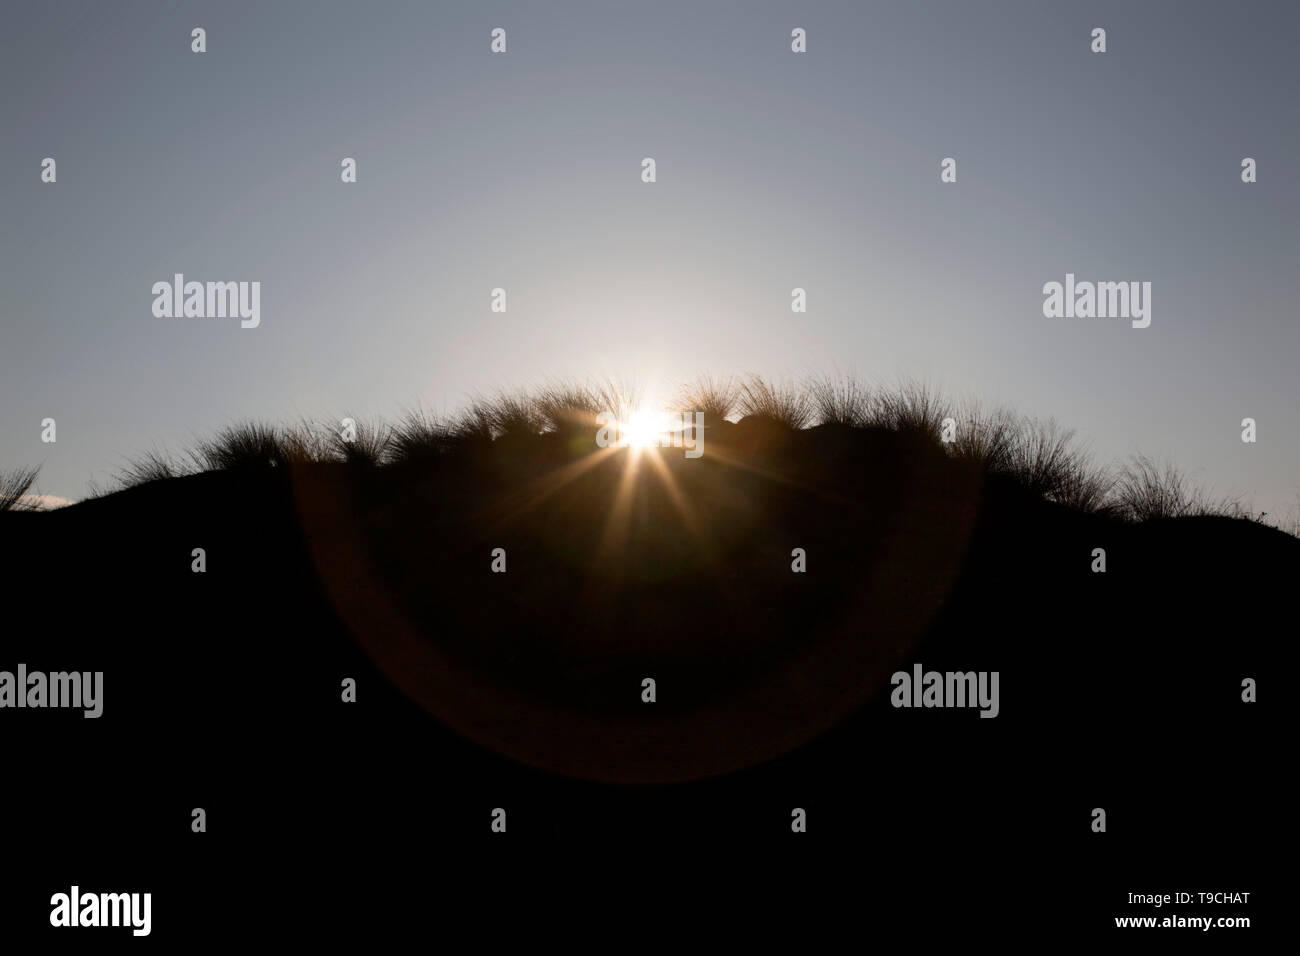 Unter der Morgen (oder Abend) Sky die sandigen Dünen silhouetted, eingesäumt durch ihre stacheligen Gras, die Sonne bricht sich hinter Ihnen. Stockfoto